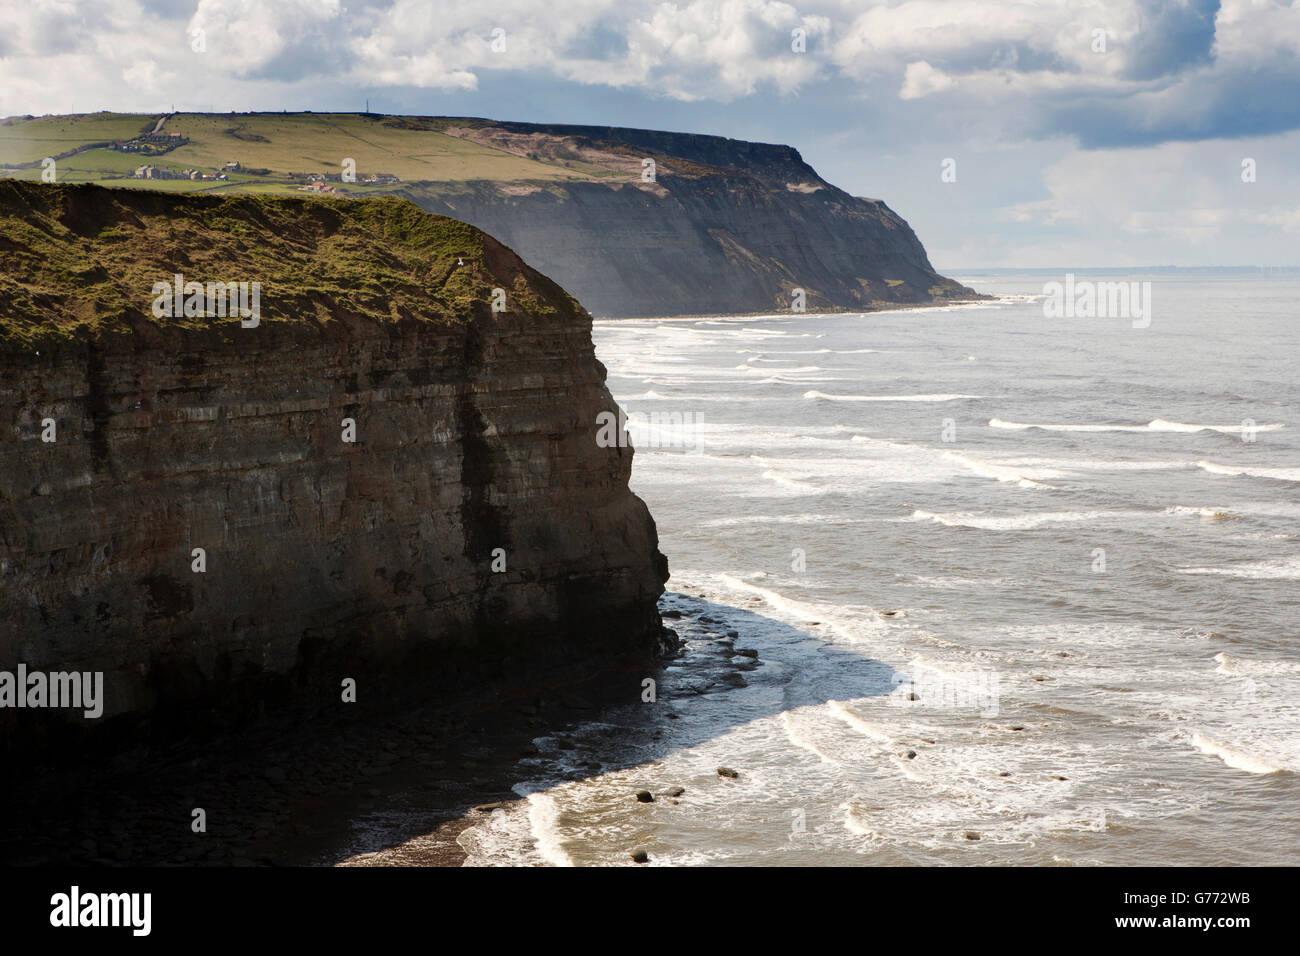 Reino Unido, Inglaterra, Yorkshire, Staithes, vista elevada de costa del Mar del Norte desde el cabecero hacia Boulby Cowbar Nab Foto de stock